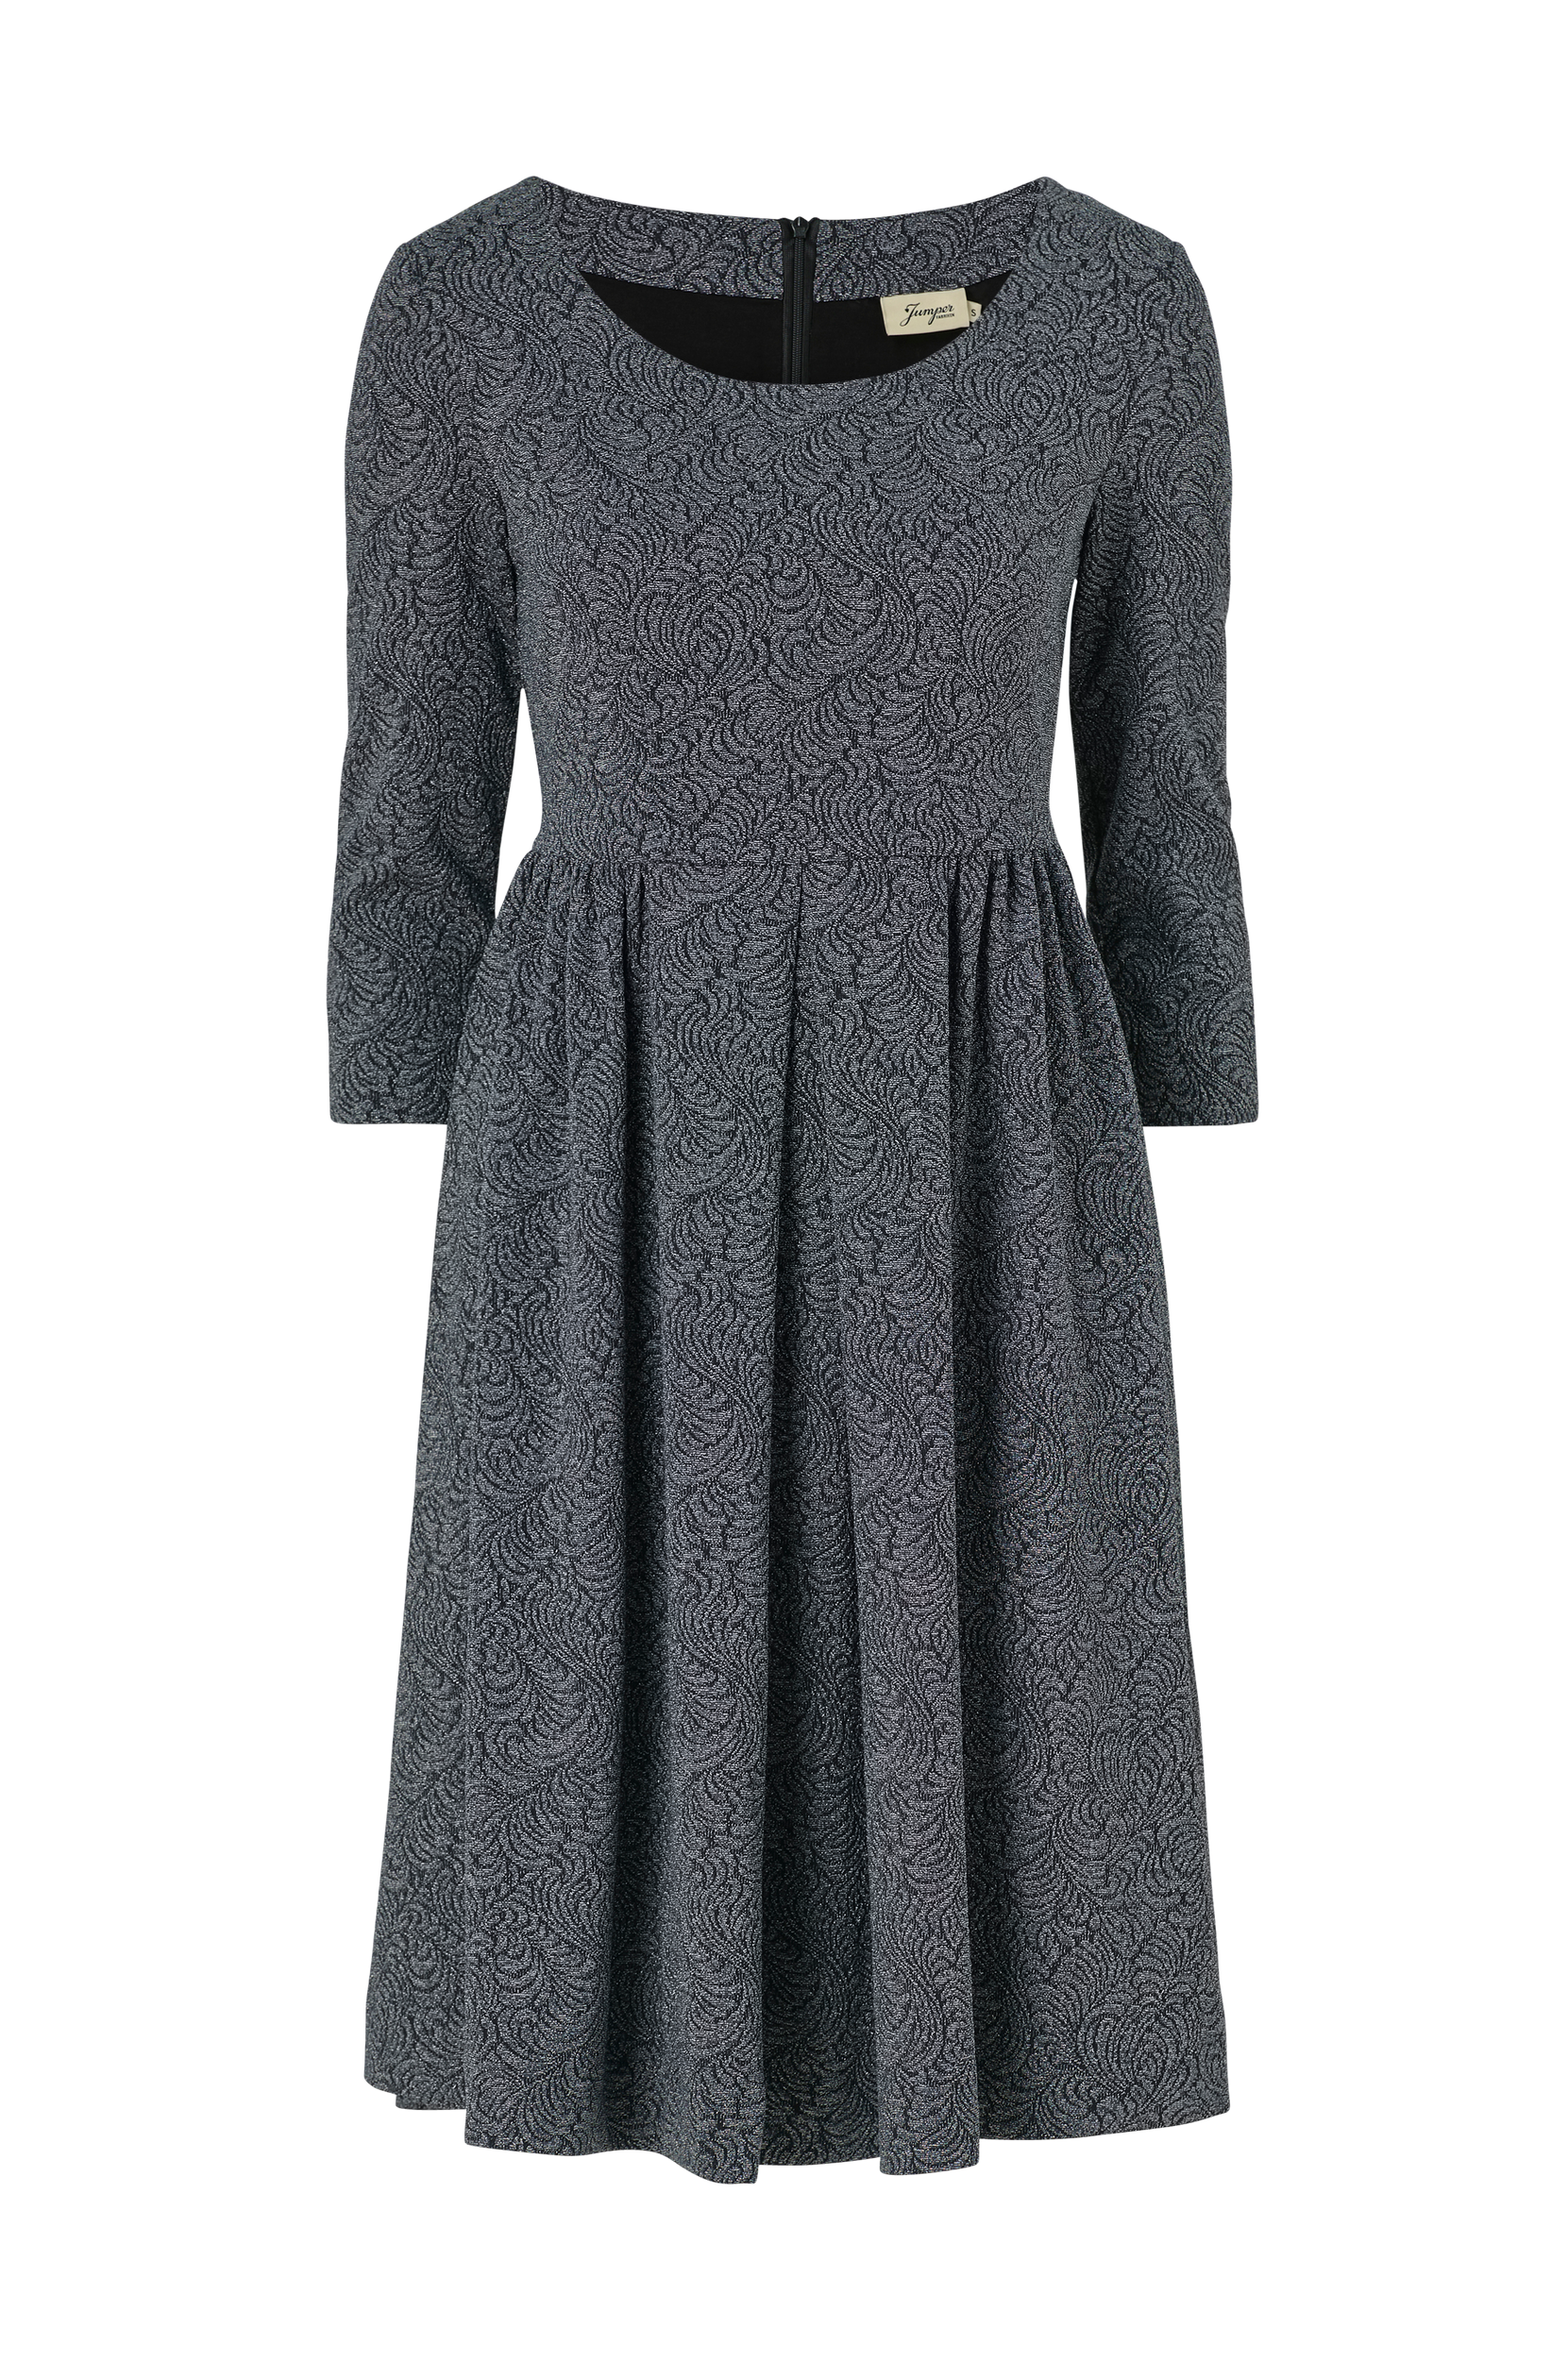 Mekko Trudy Jersey Dress, Jumperfabriken